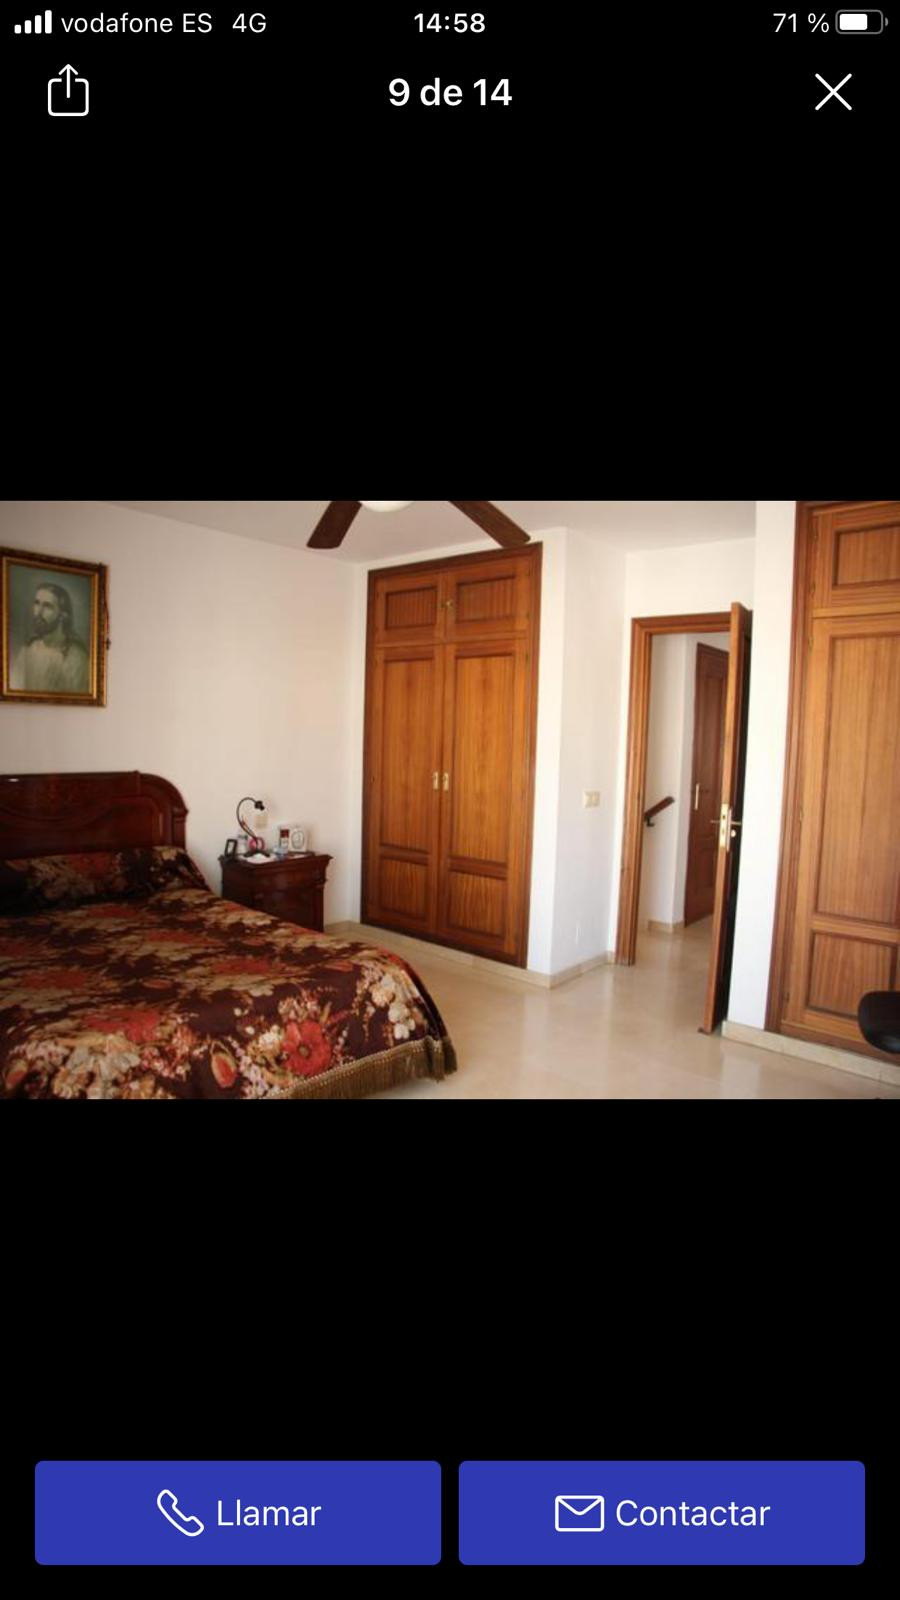 3 bedrooms Townhouse in Estepona